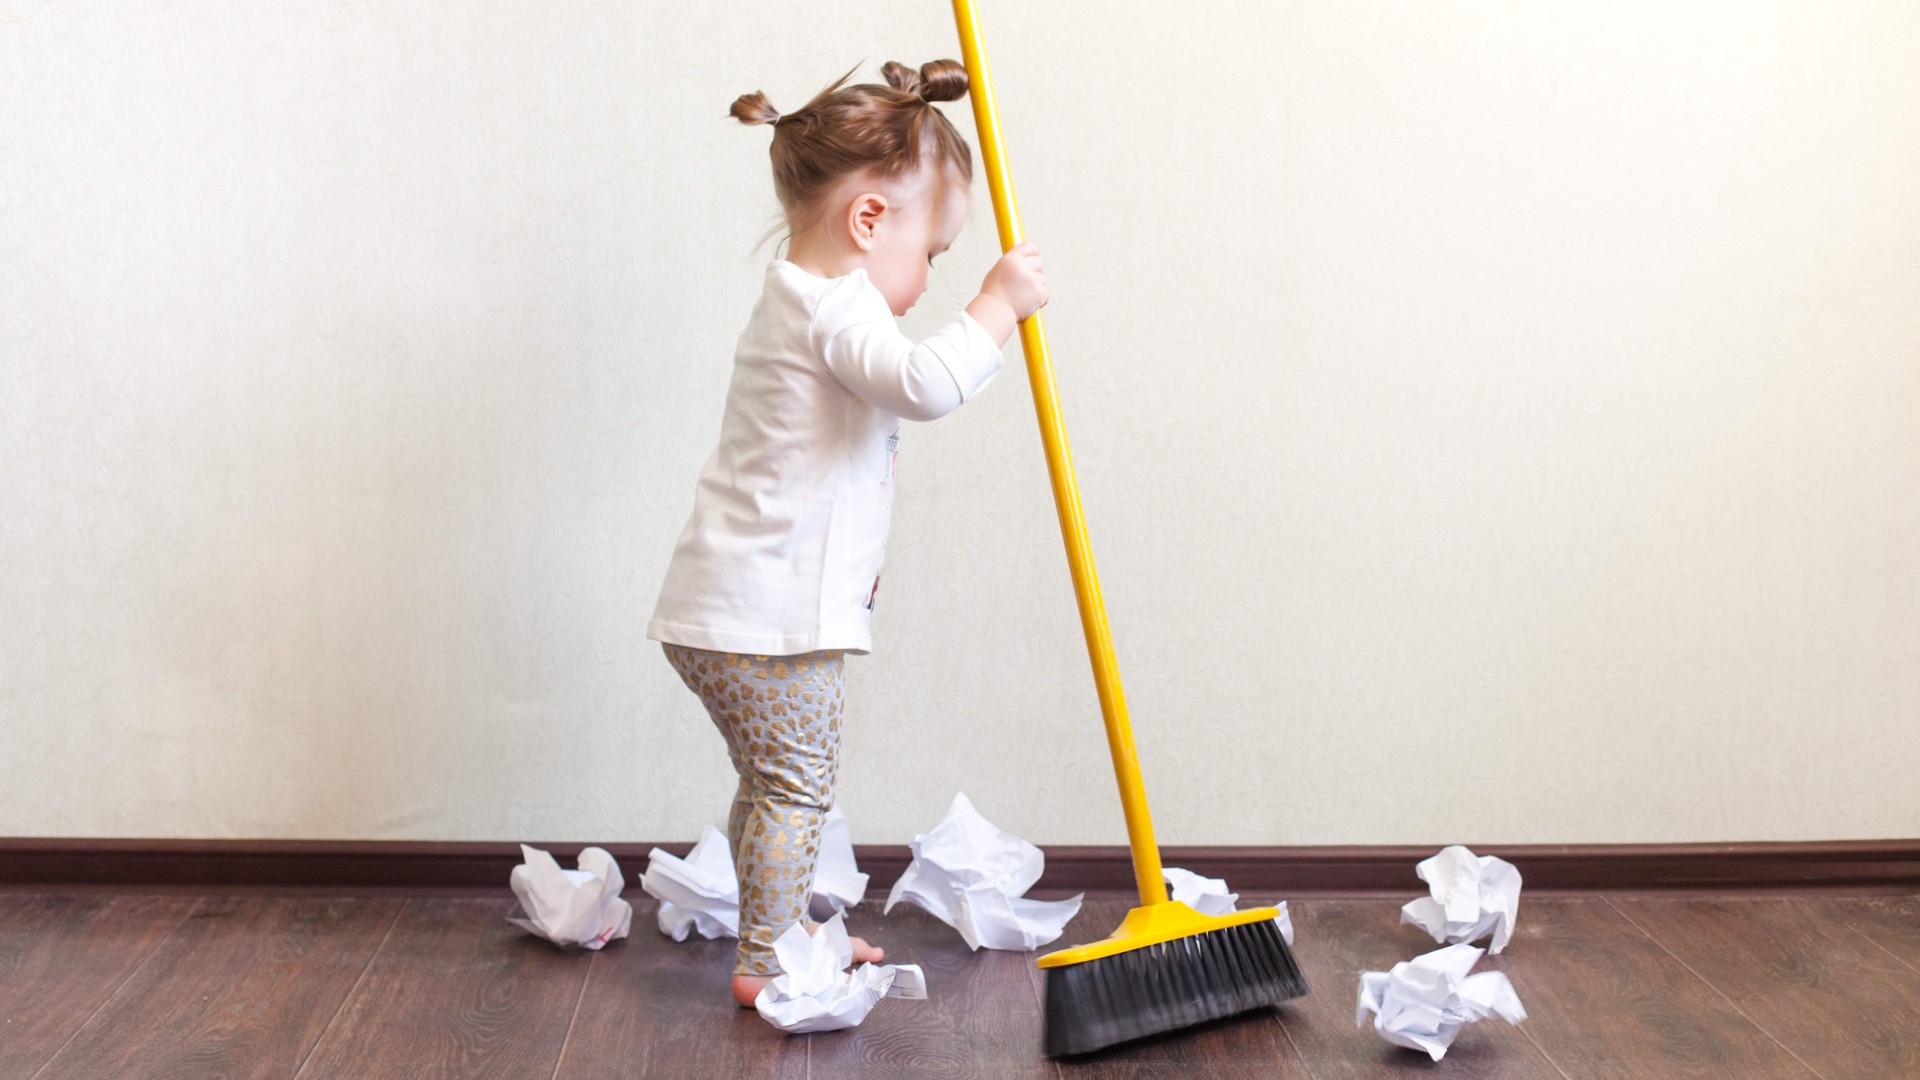 Implicarea copiilor în treburile casnice sfaturi